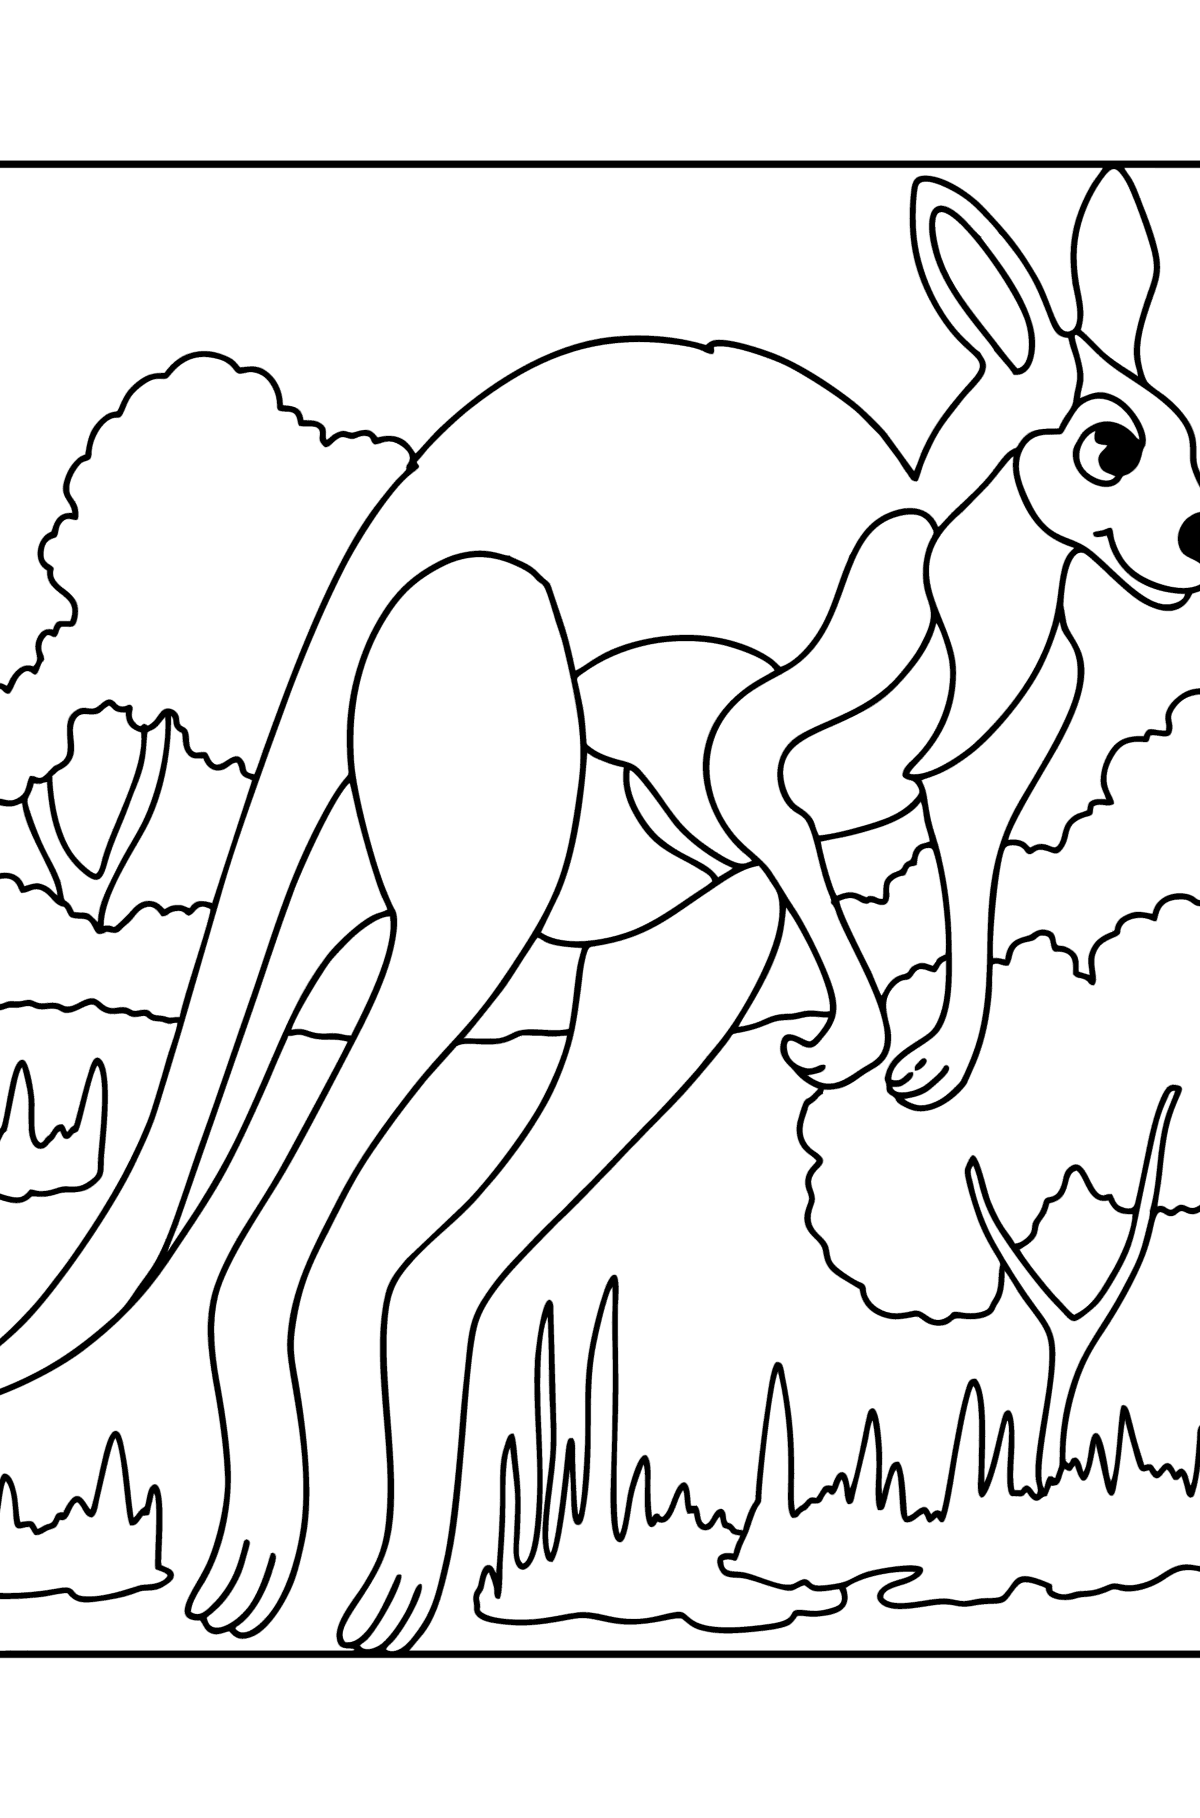 Boyama sayfası Gri kanguru - Boyamalar çocuklar için